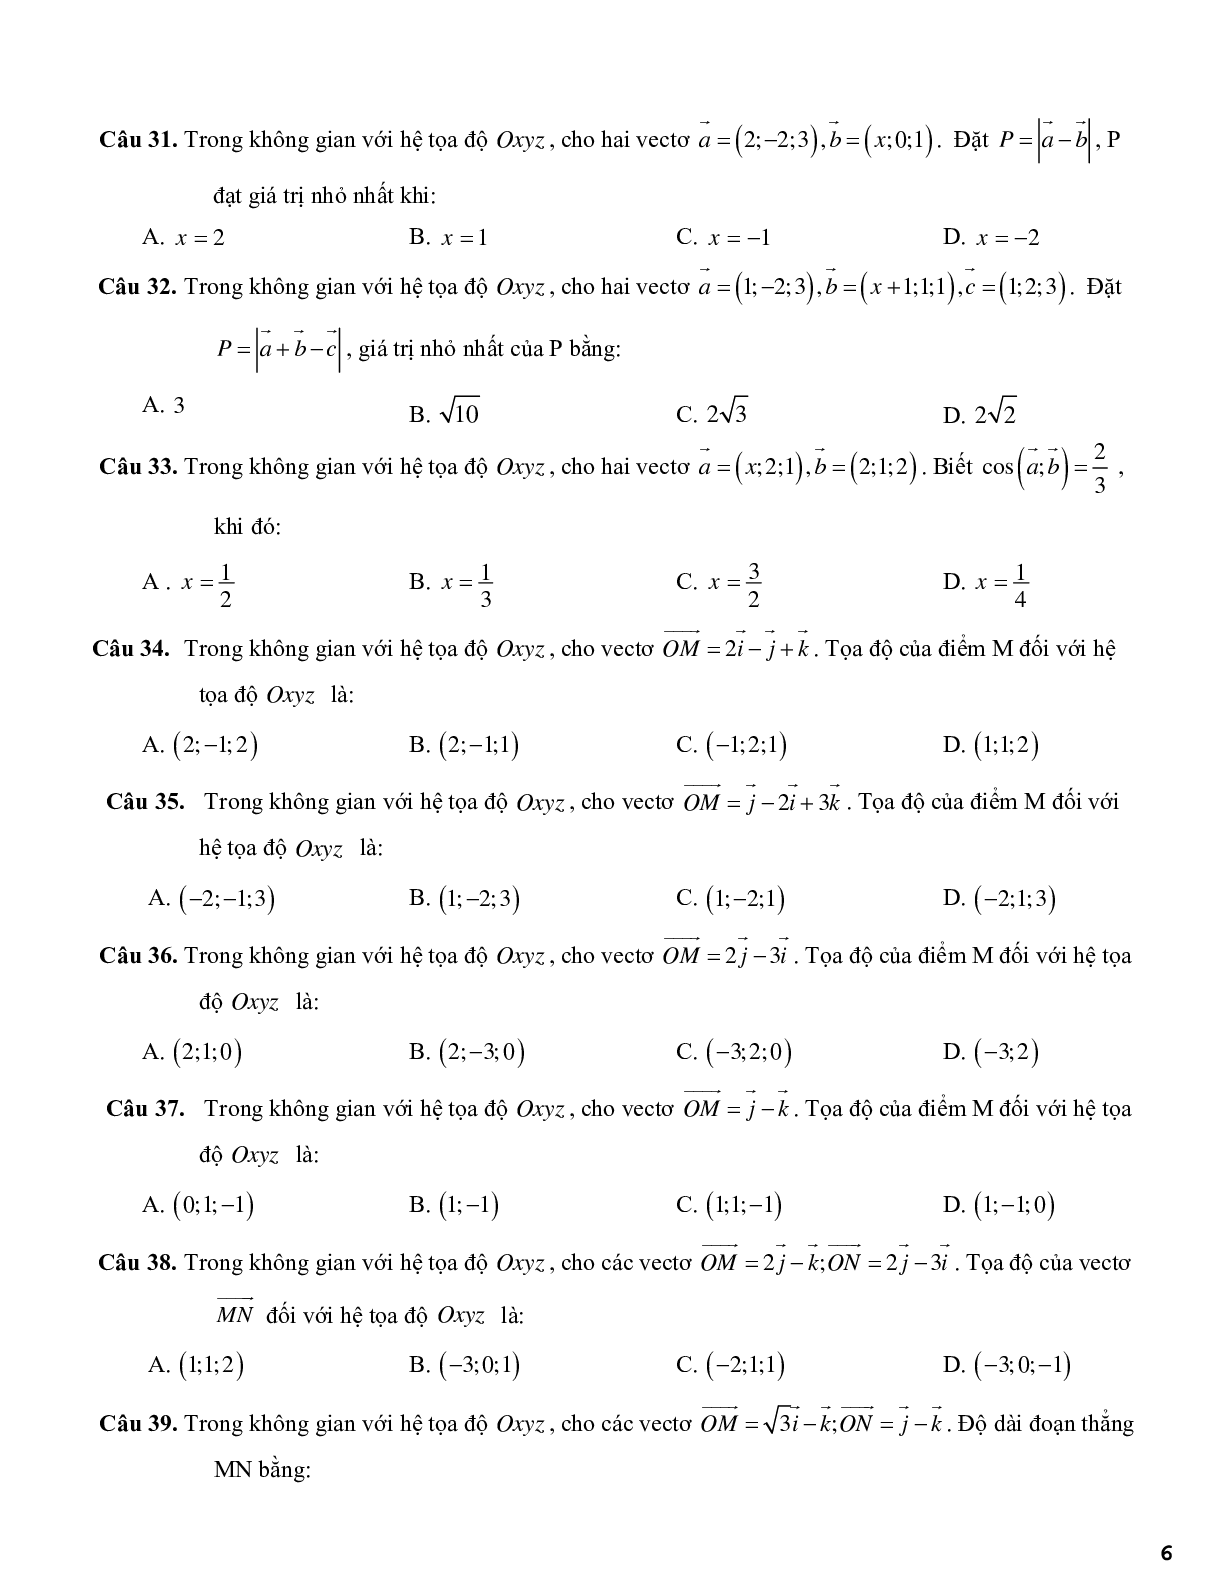 420 câu trắc nghiệm phương pháp tọa độ trong không gian - có đáp án (trang 6)